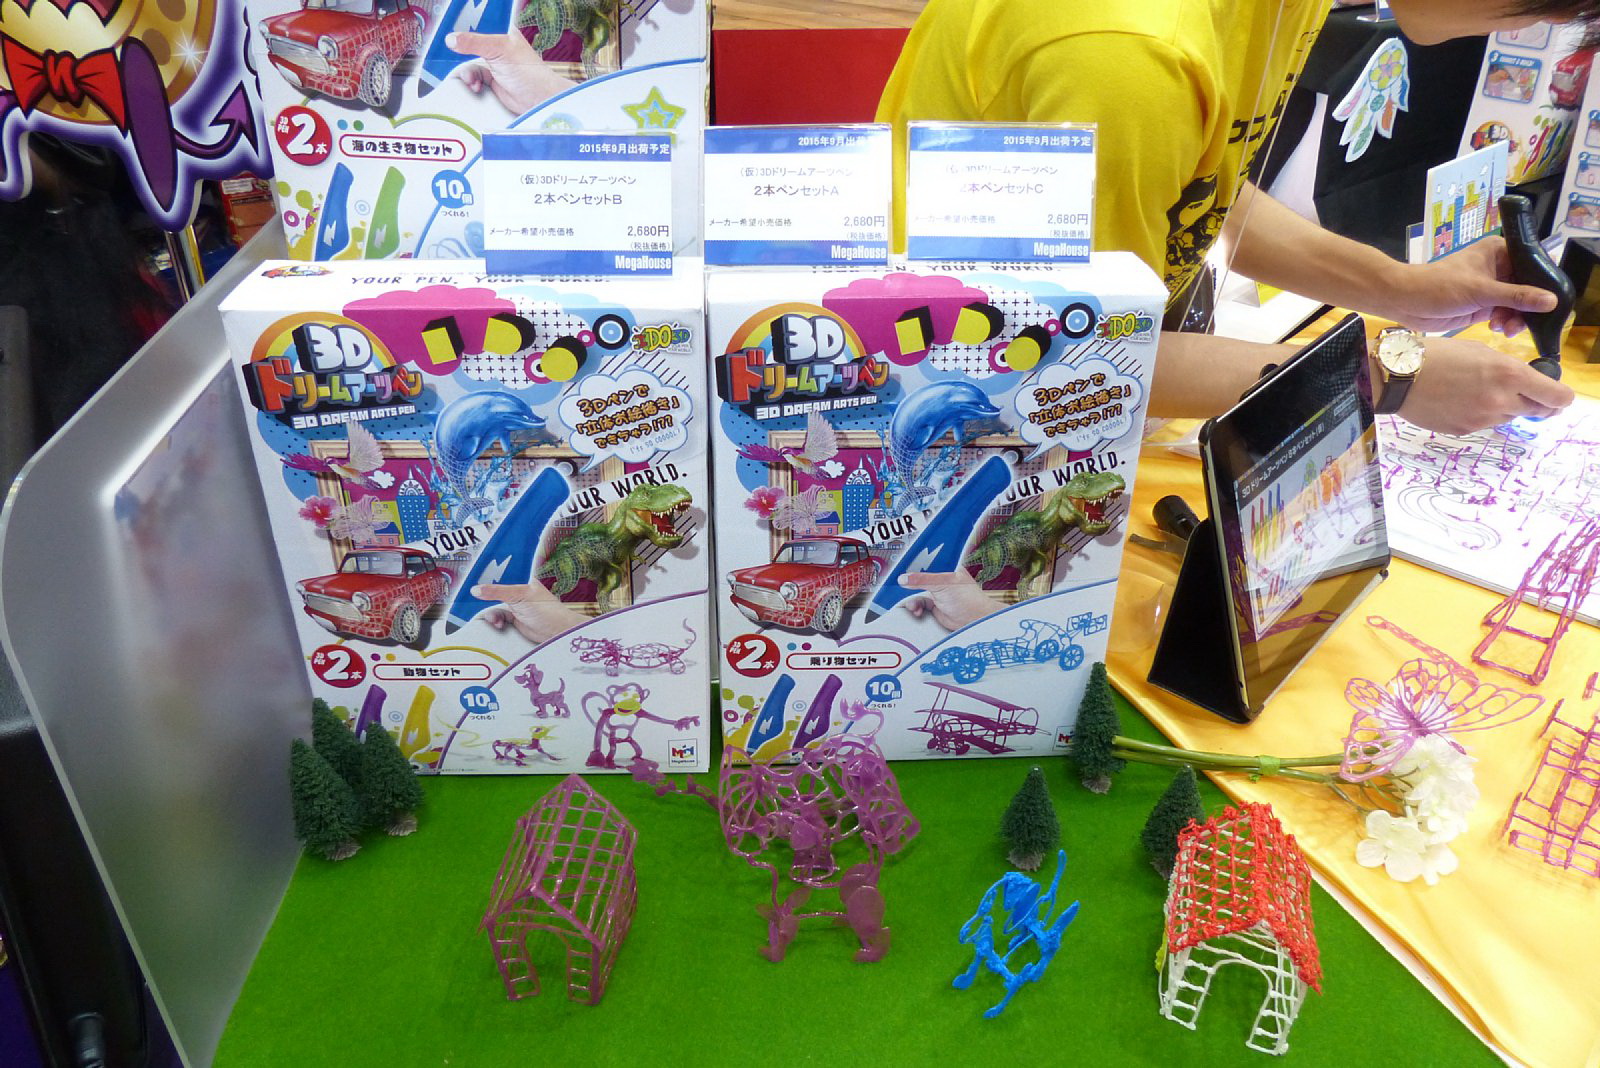 東京おもちゃショー2015の各社新製品をレポート - GAME Watch